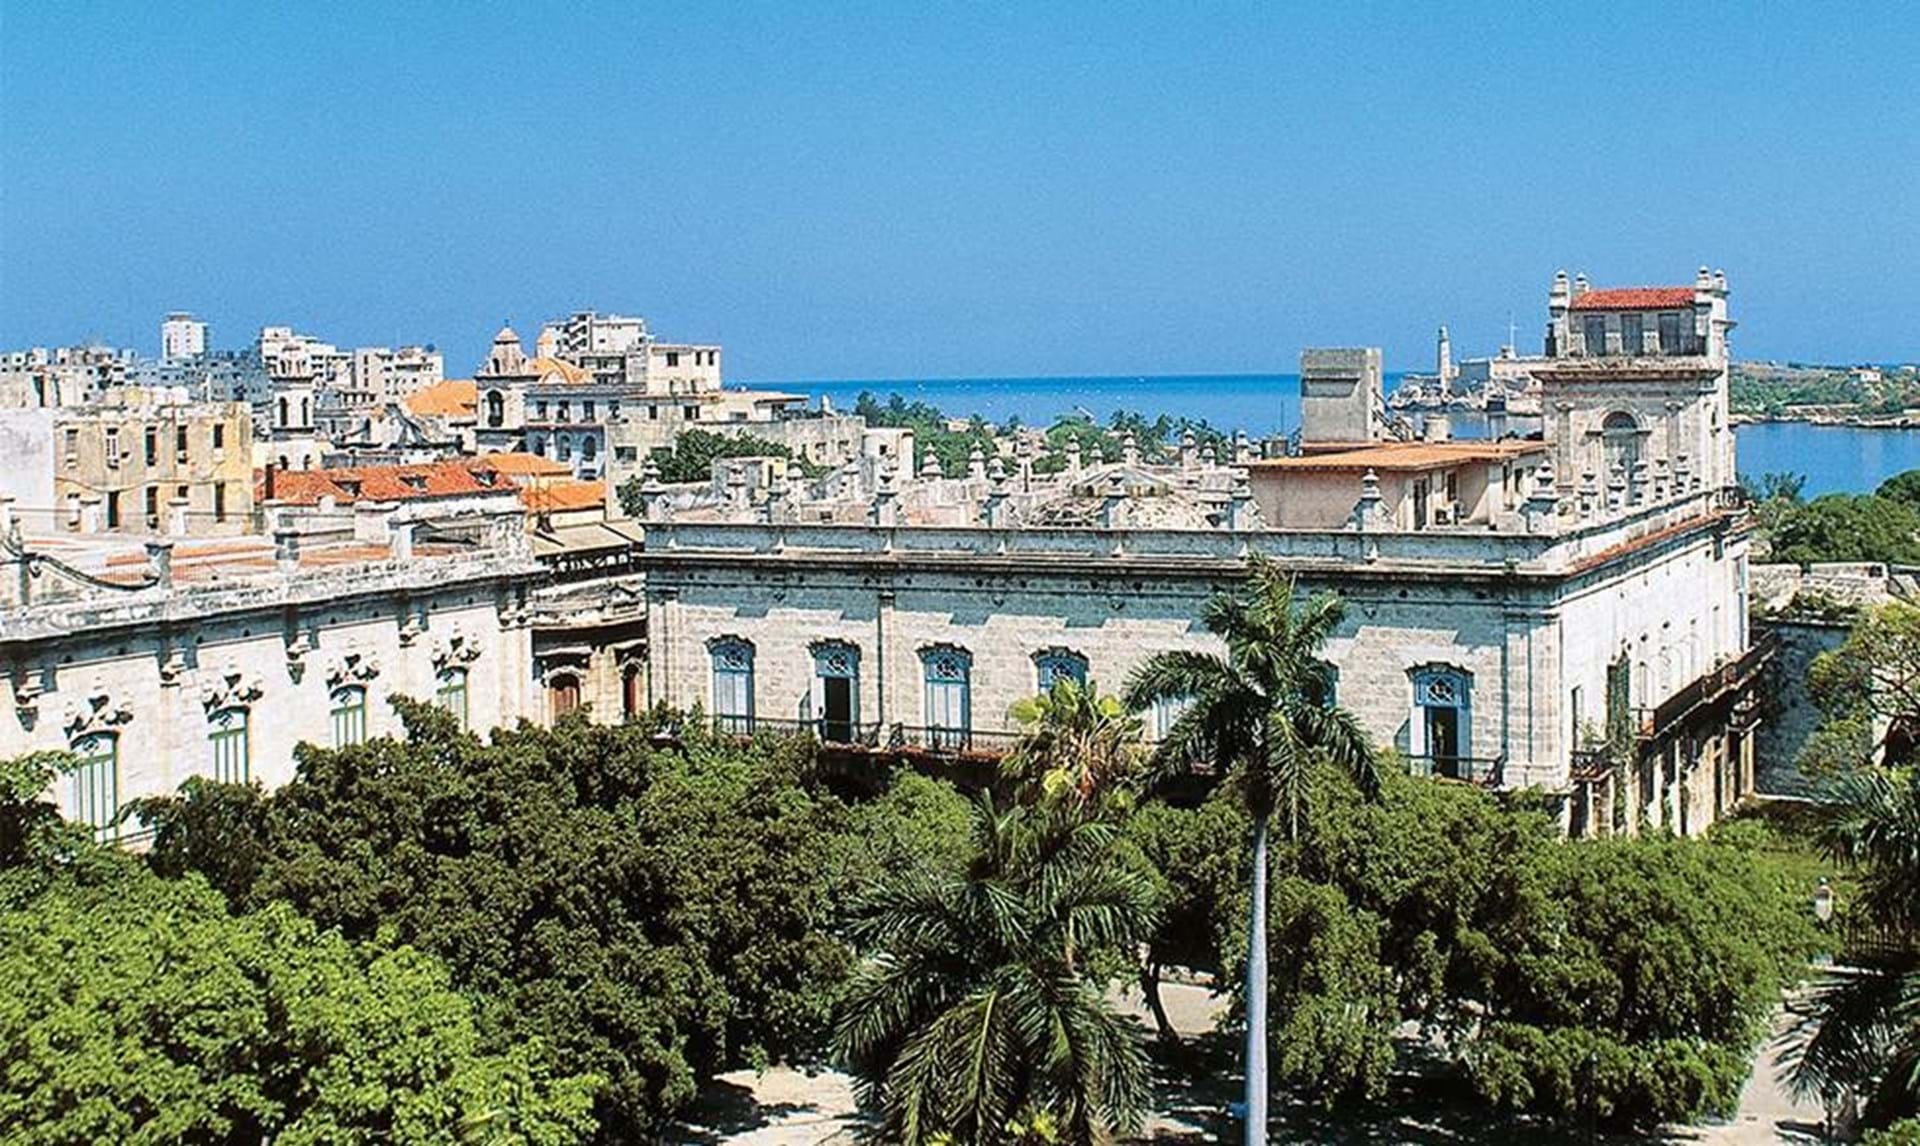 9 dig Havana på et døgn - Euroman